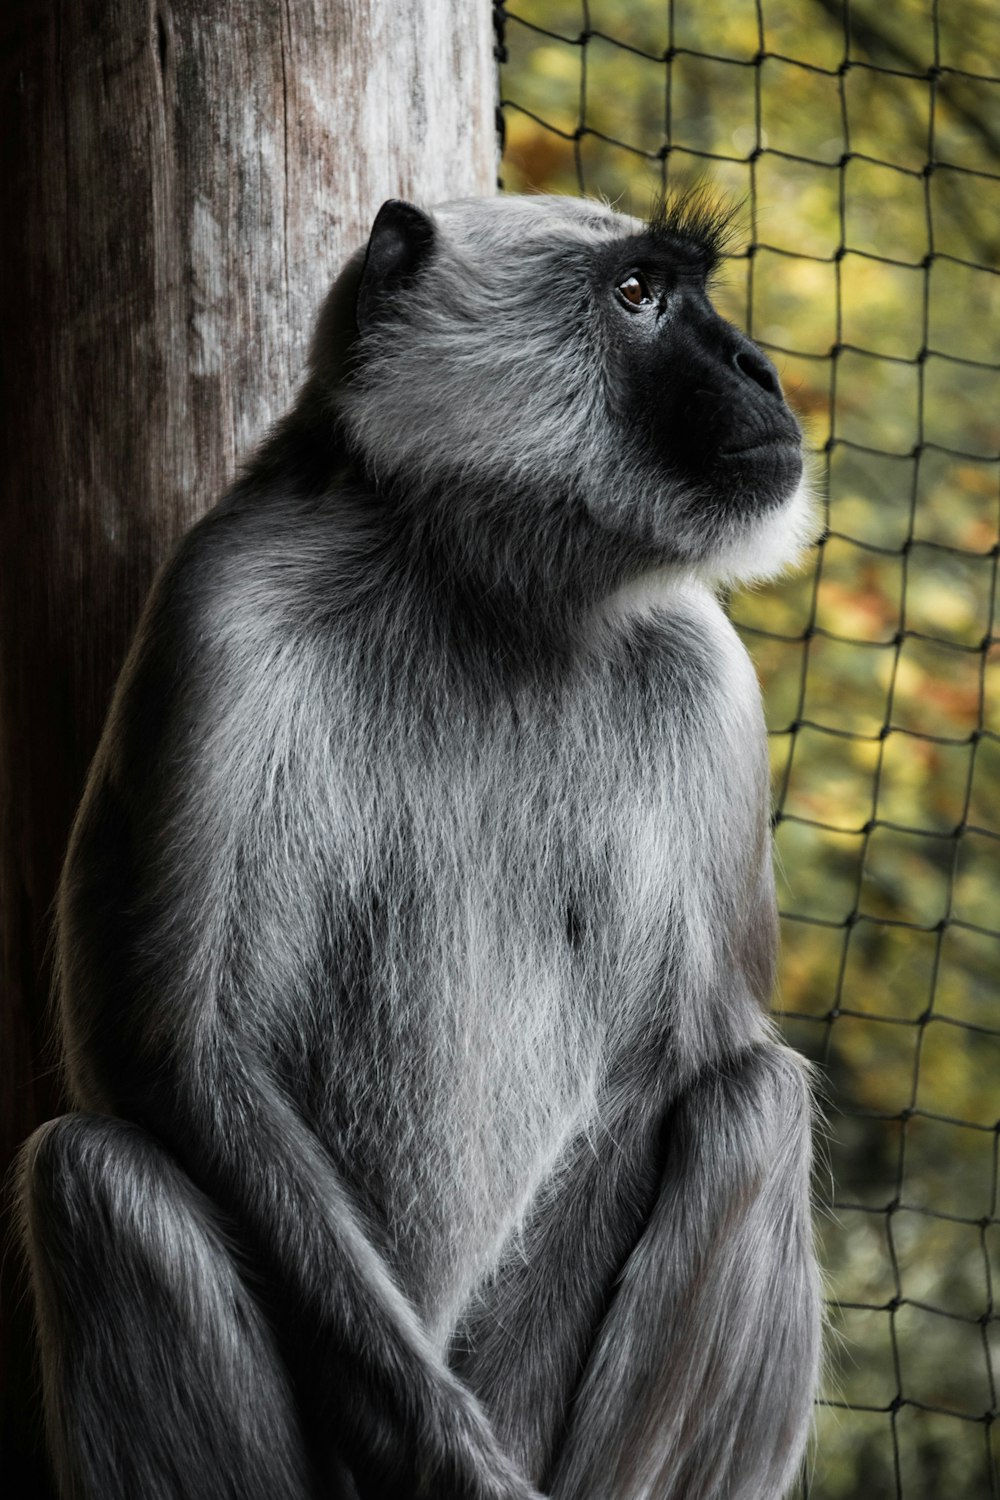 mono gris y negro sentado dentro de la jaula